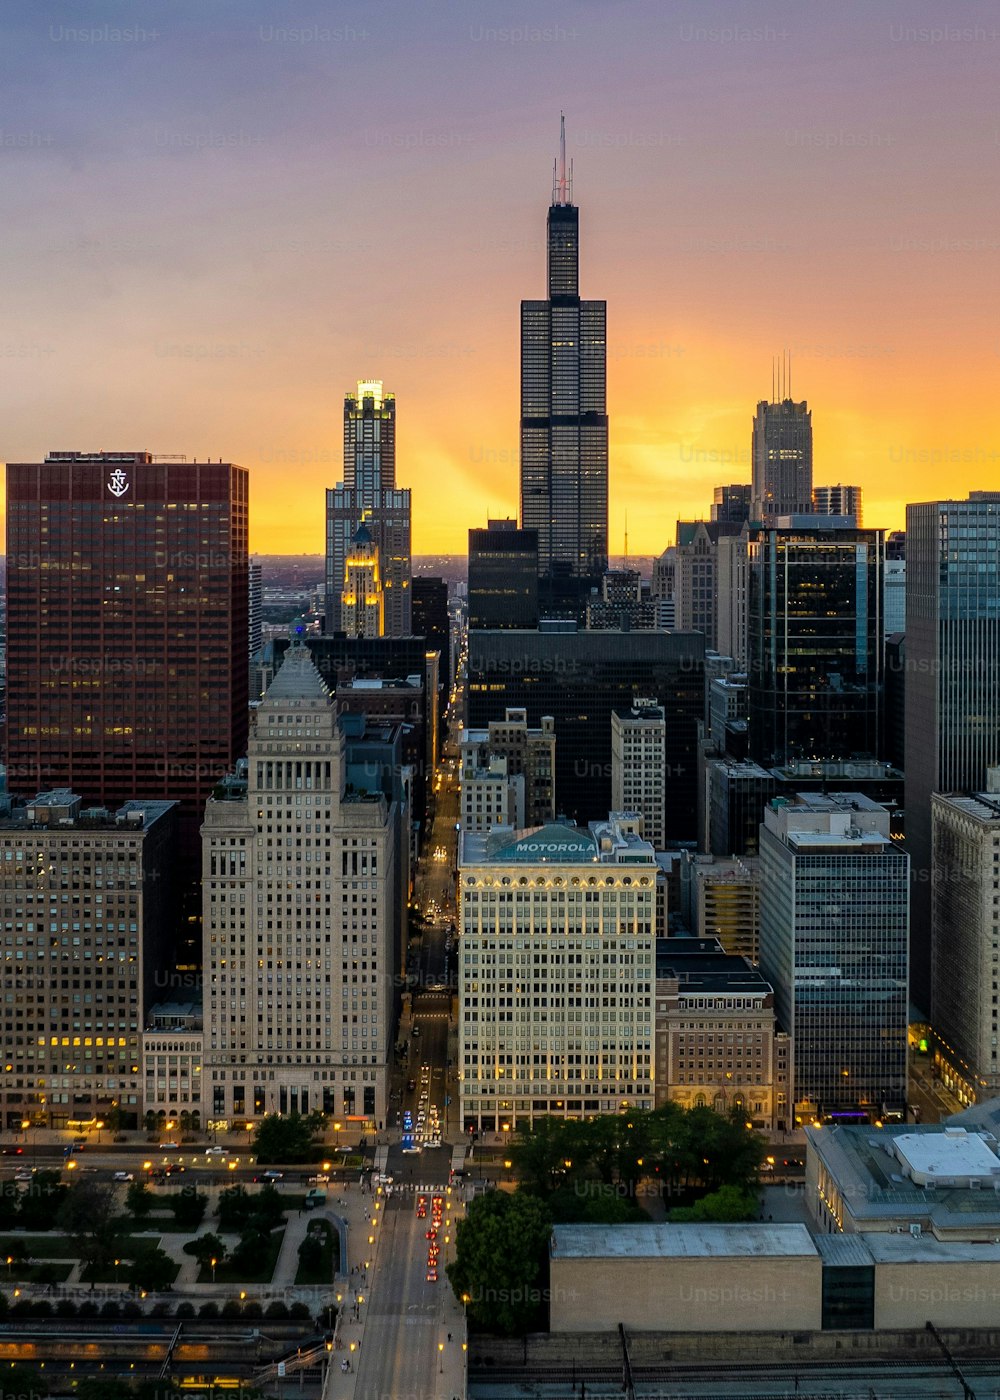 Eine Luftaufnahme der Innenstadt von Chicago mit hohen Wolkenkratzern bei Sonnenuntergang im bewölkten Himmelshintergrund